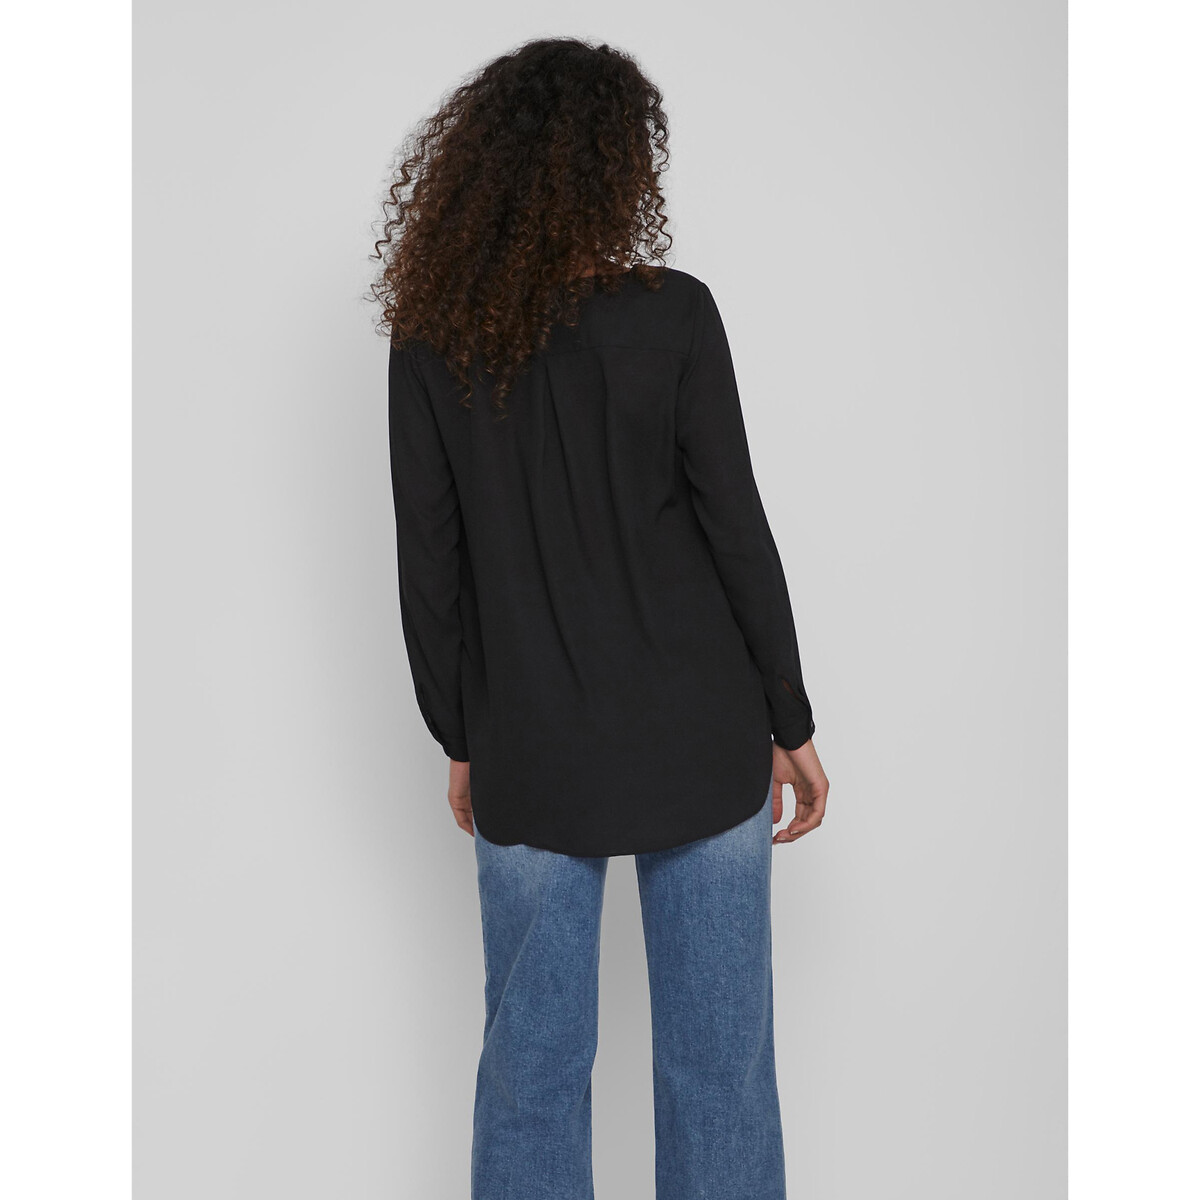 Блузка La Redoute С V-образным вырезом и длинными рукавами S черный, размер S - фото 3